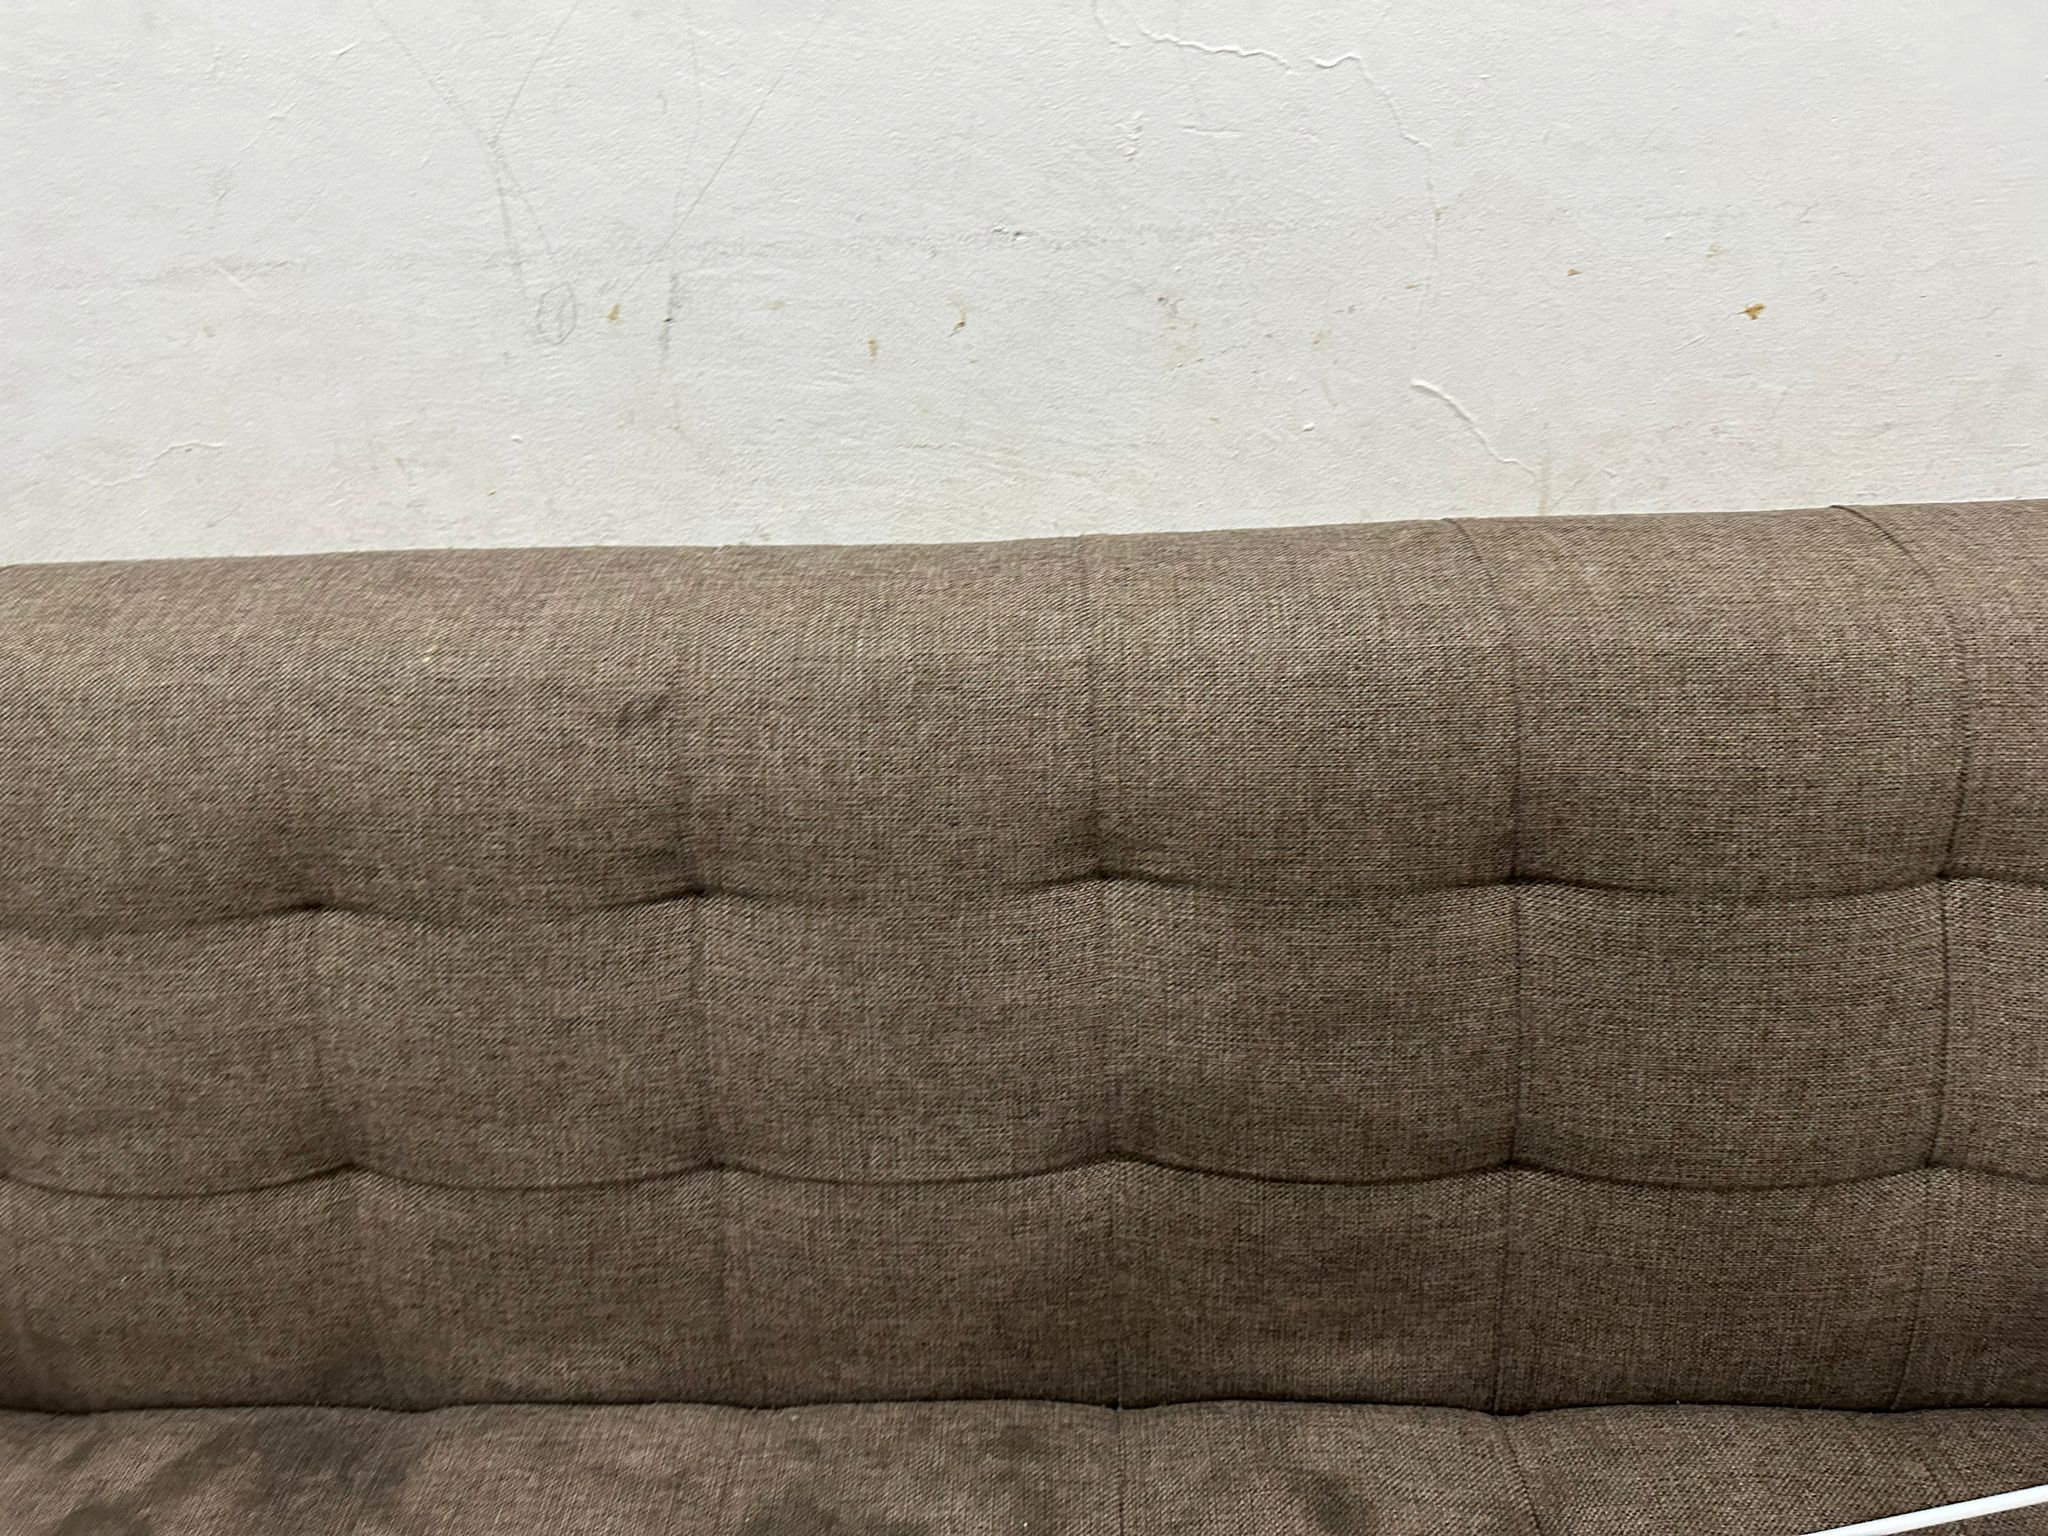 Sofa Single